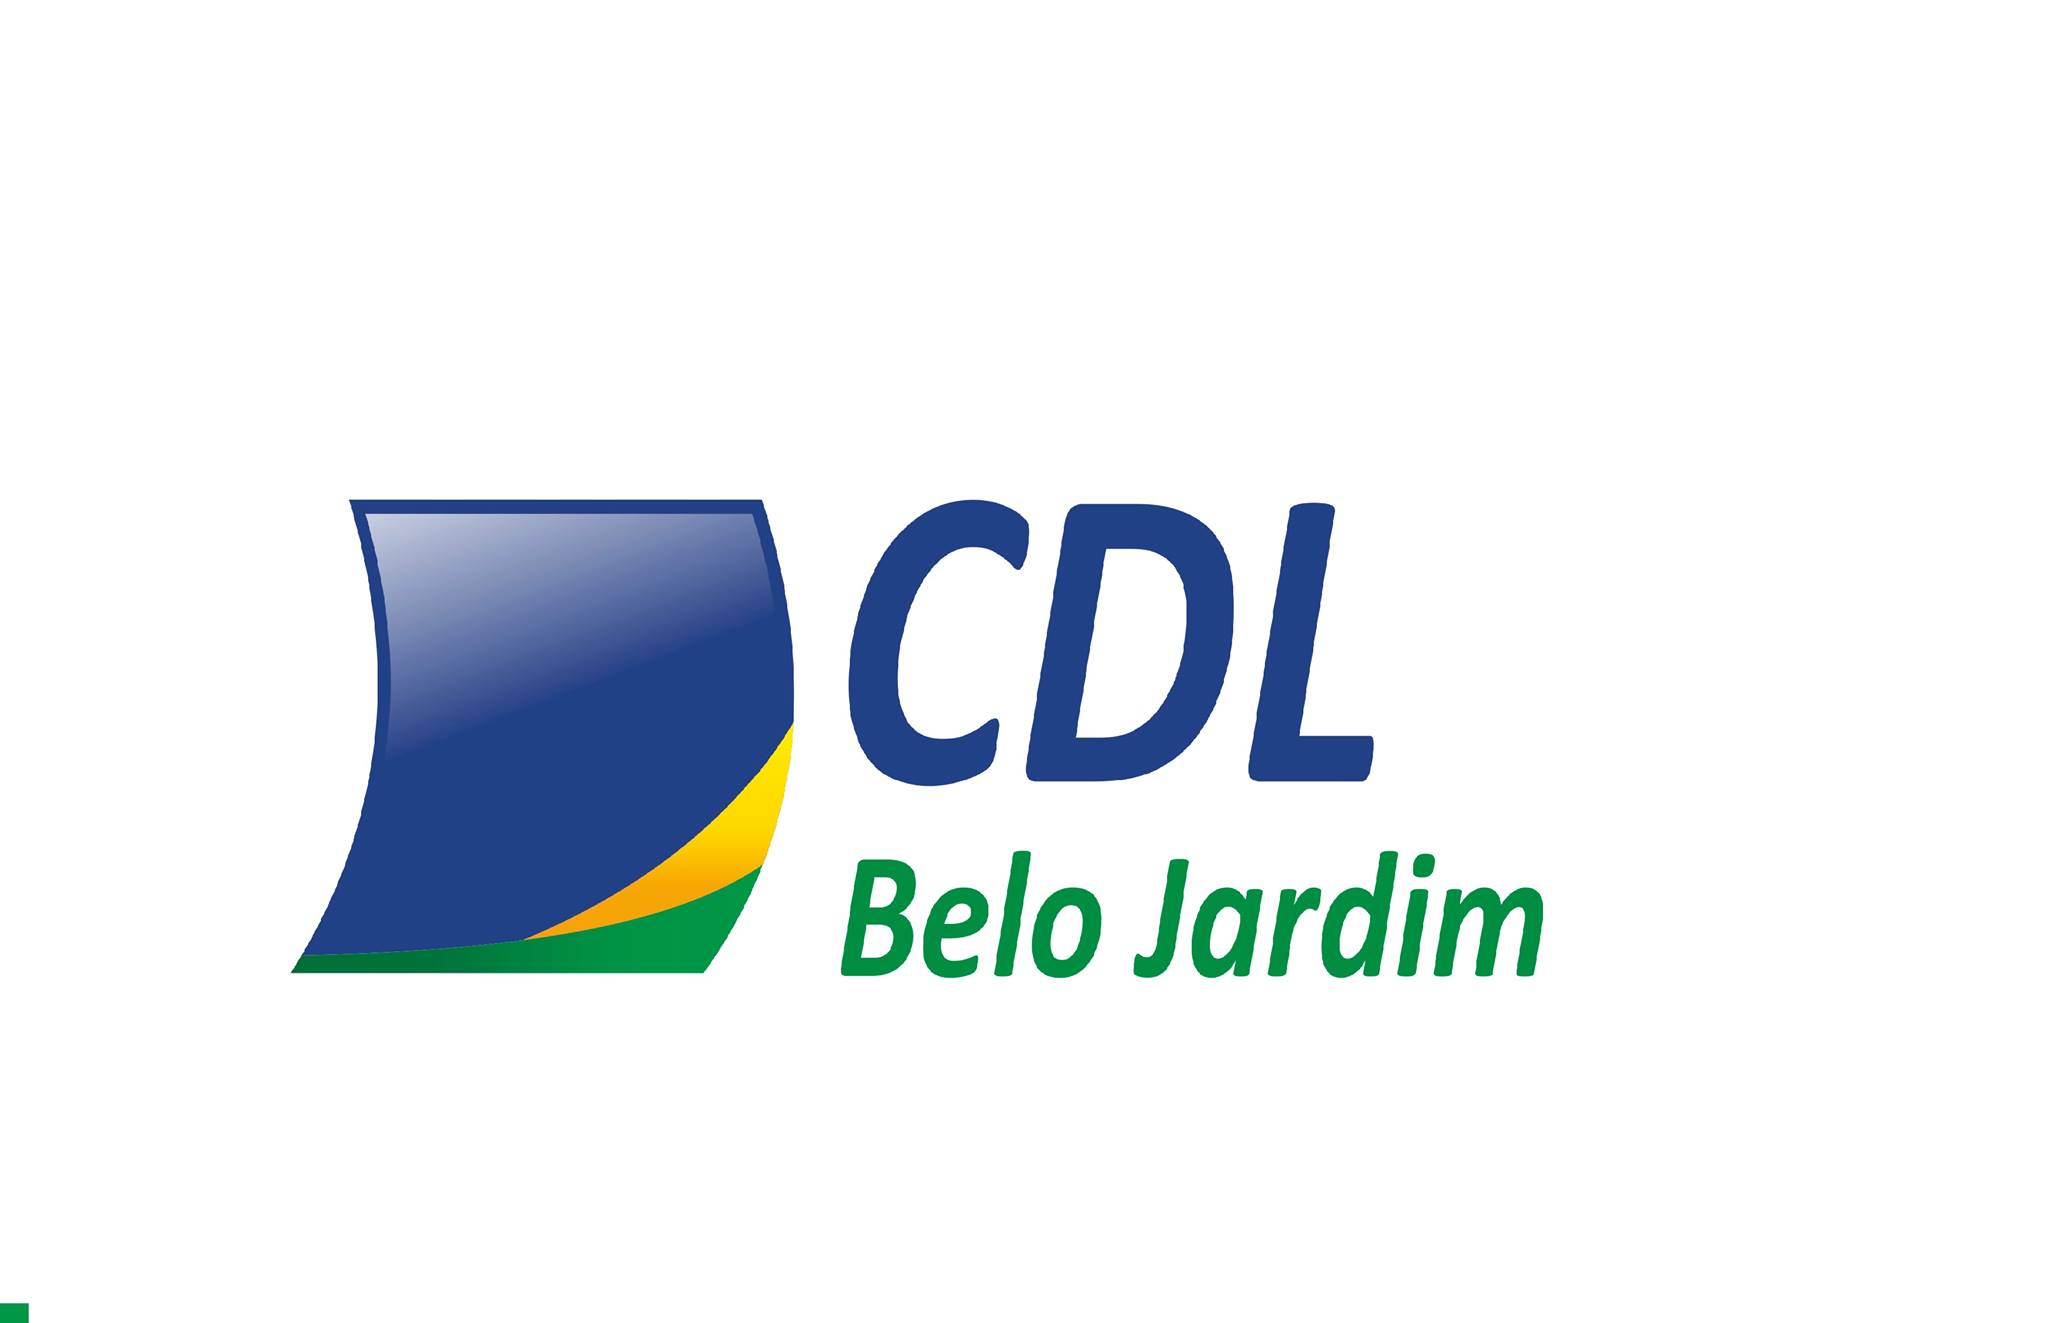 CDL de Belo Jardim se compromete a fornecer informações do banco de dados gratuitamente